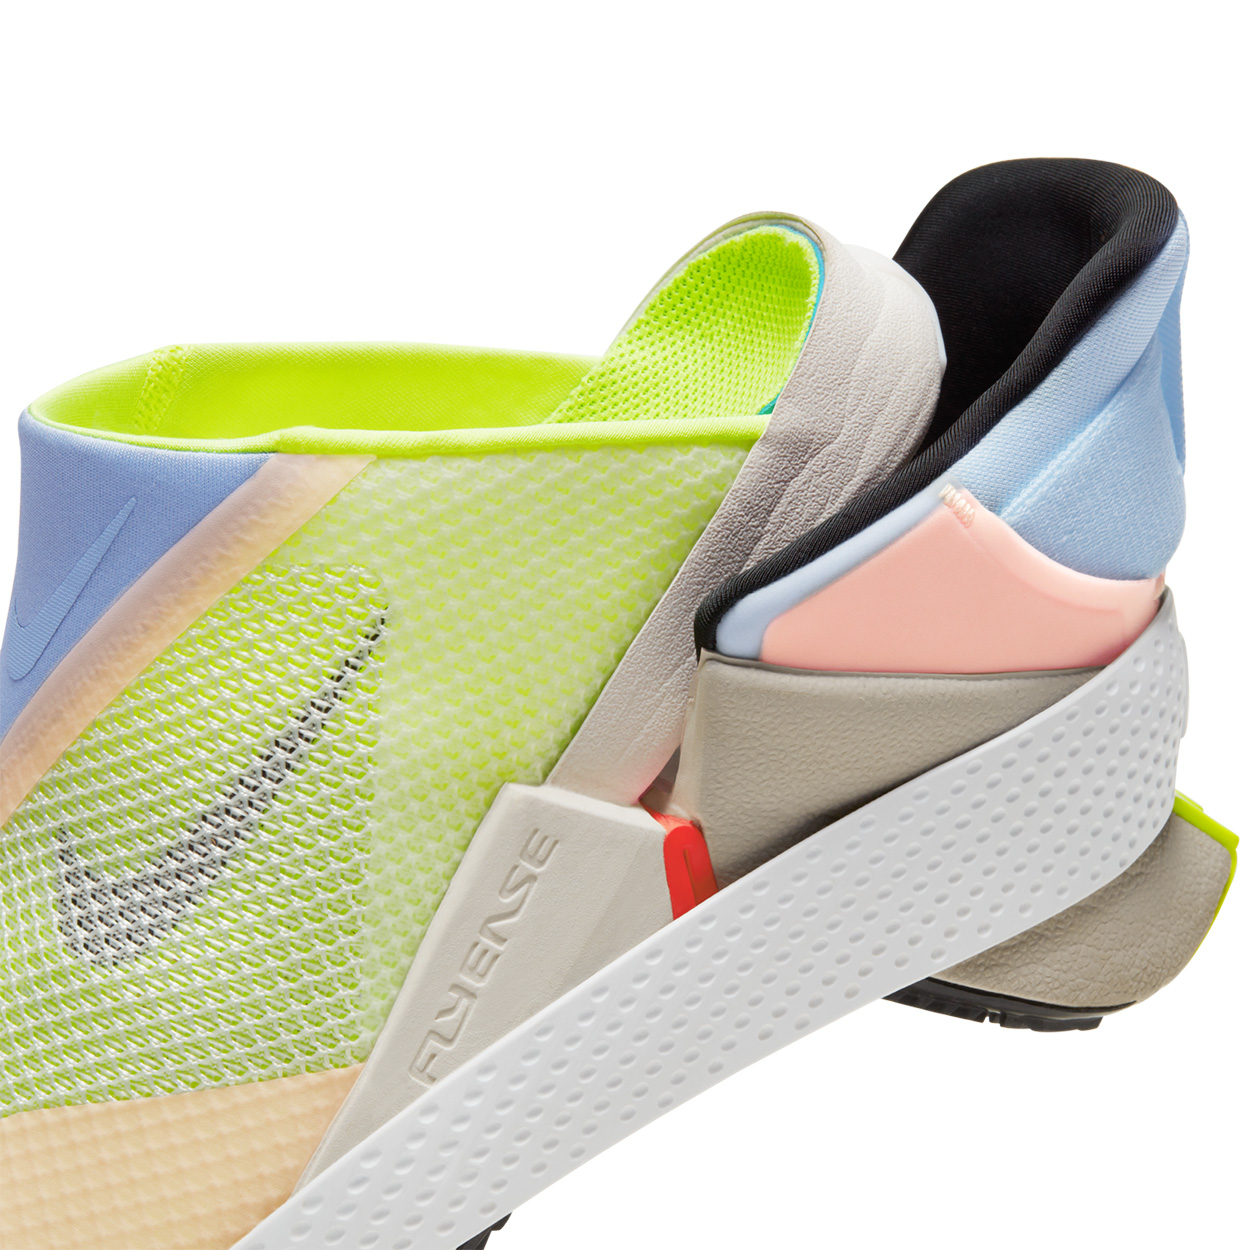 Novo tênis da Nike tem dobradiça que dispensa as mãos